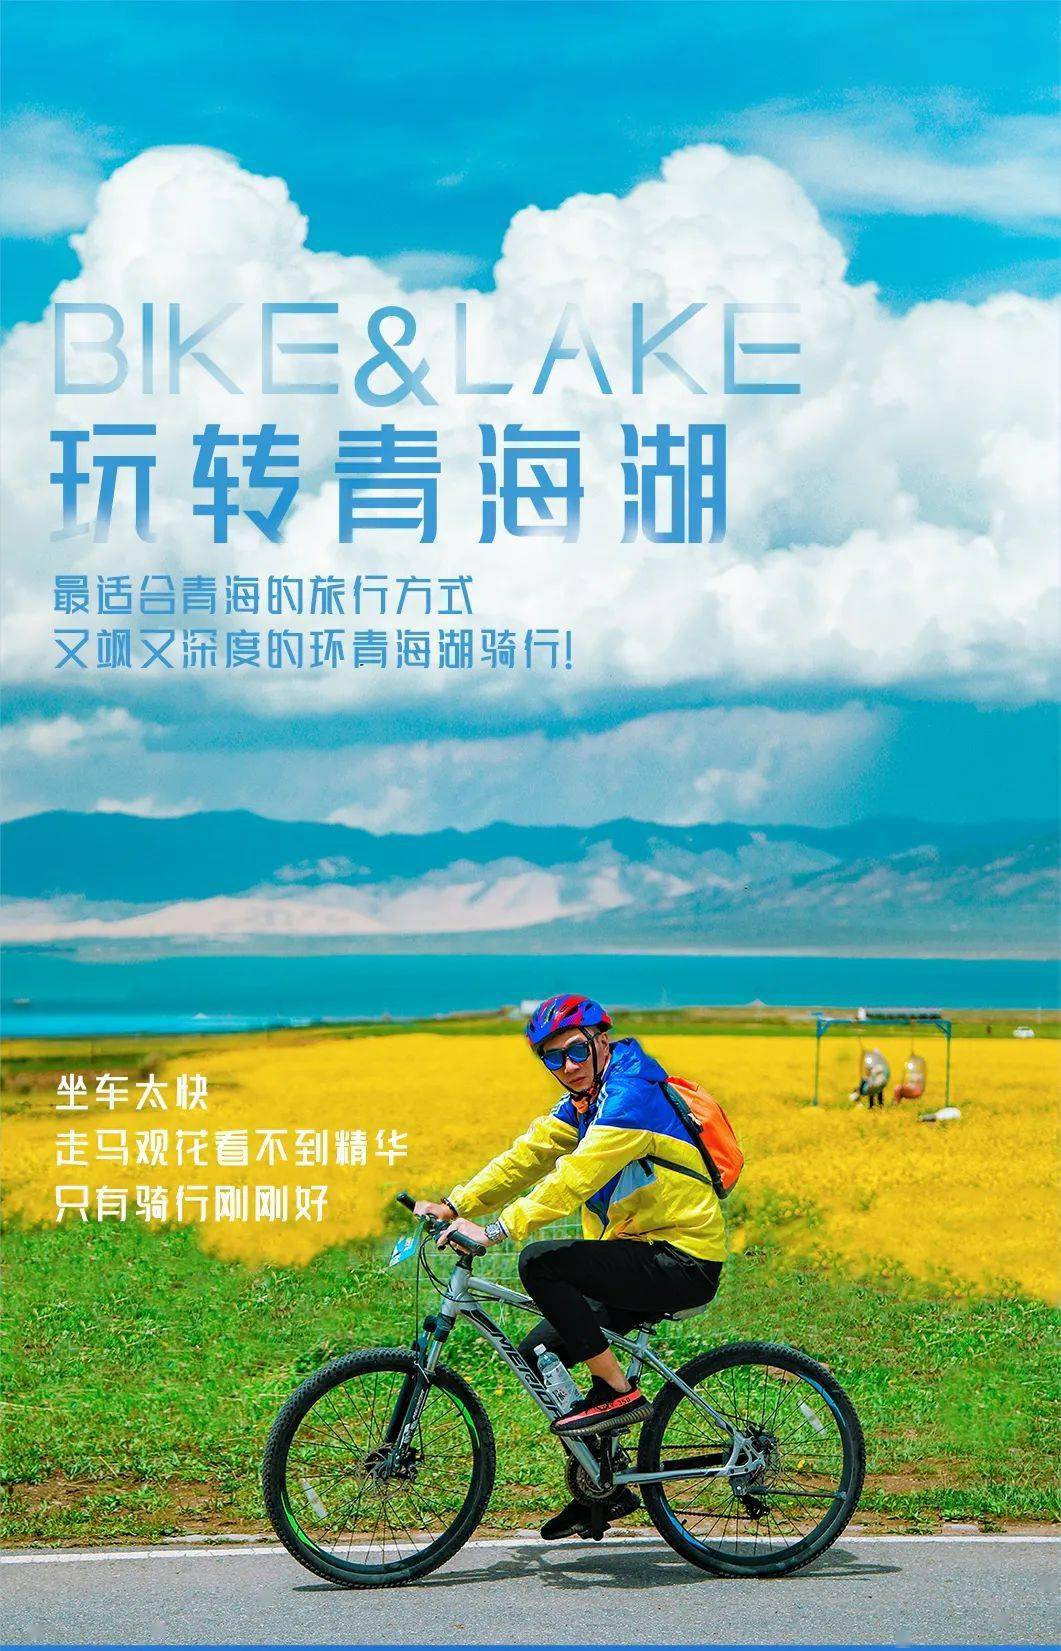 2022年青海湖骑行活动报名中,给自己一场刻骨铭心的骑